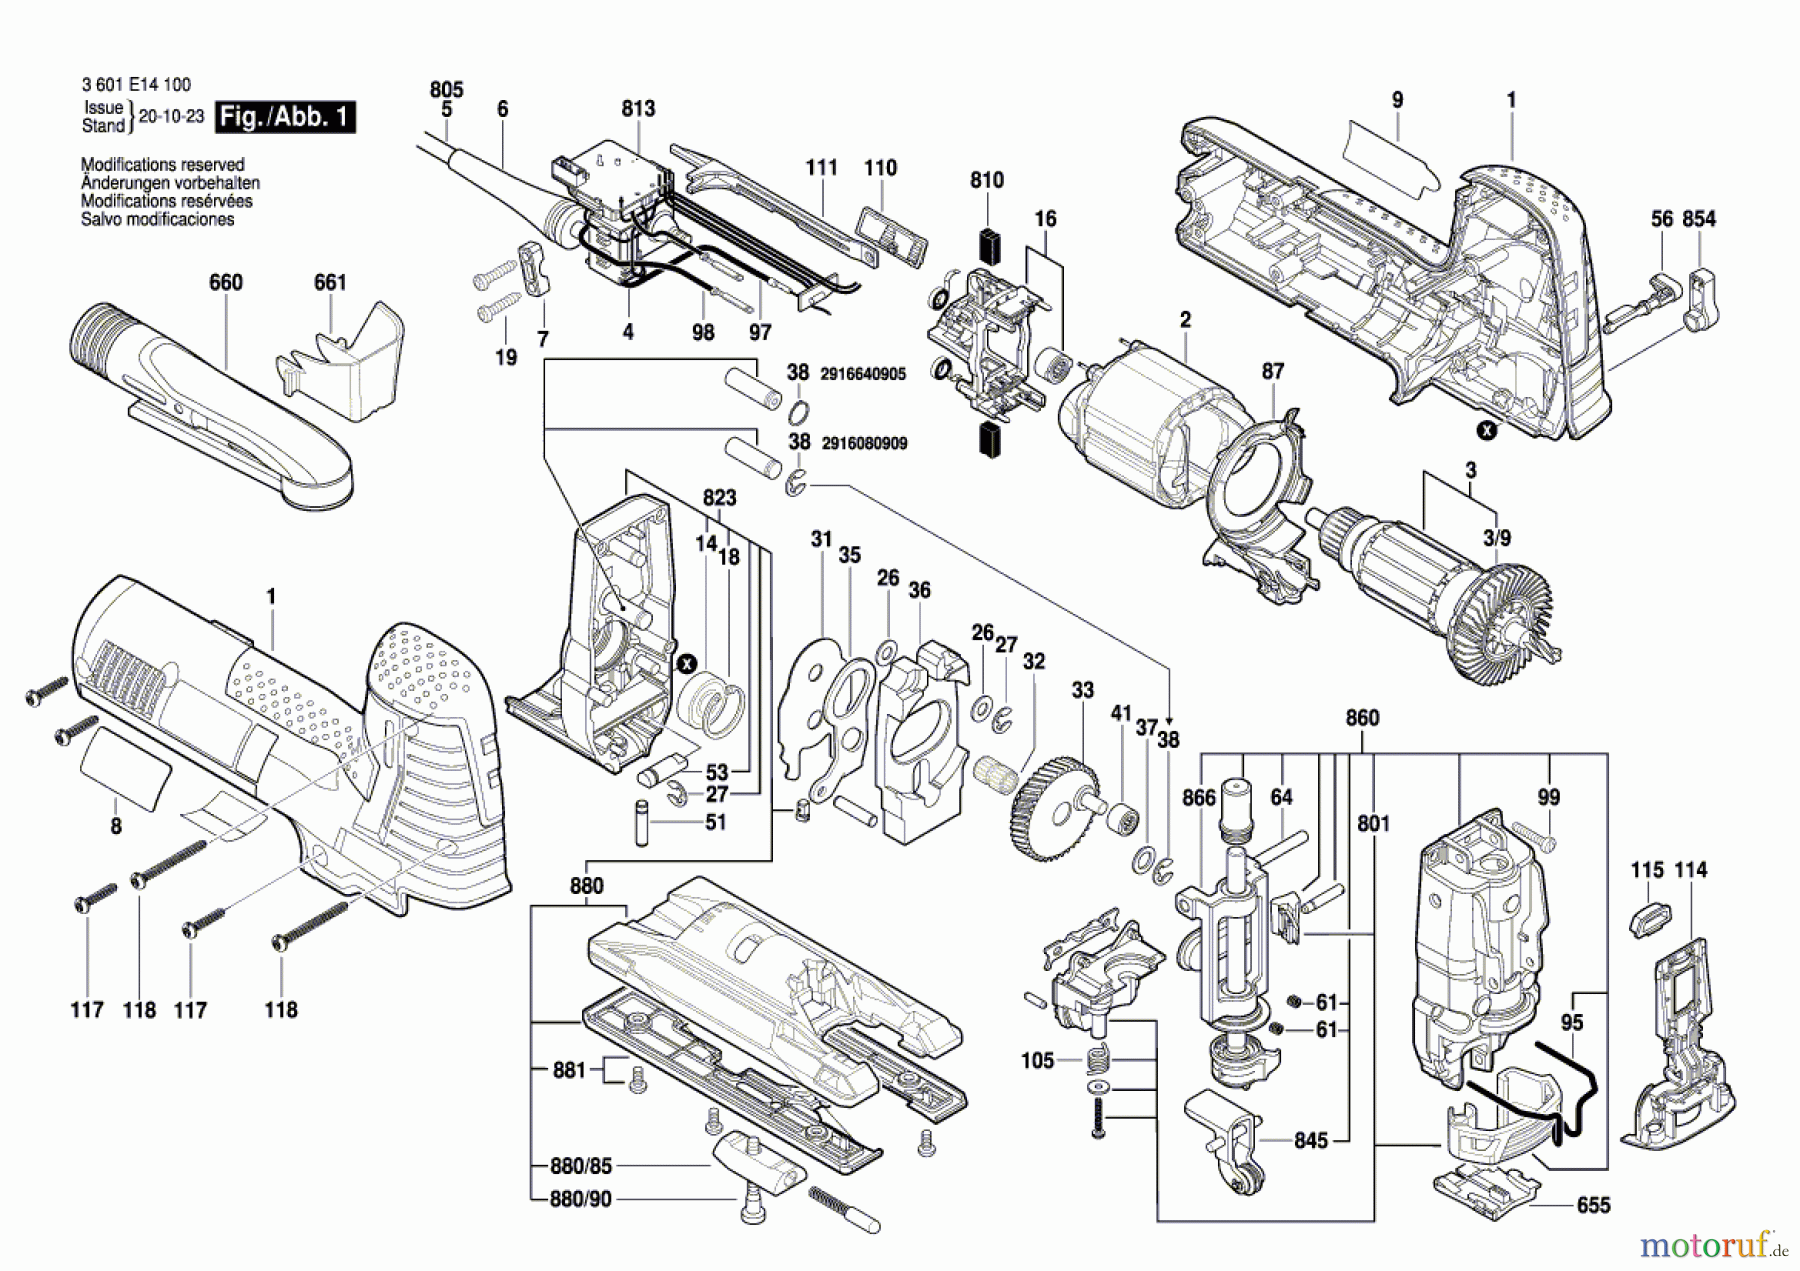  Bosch Werkzeug Stichsäge GST 1400 CE Seite 1